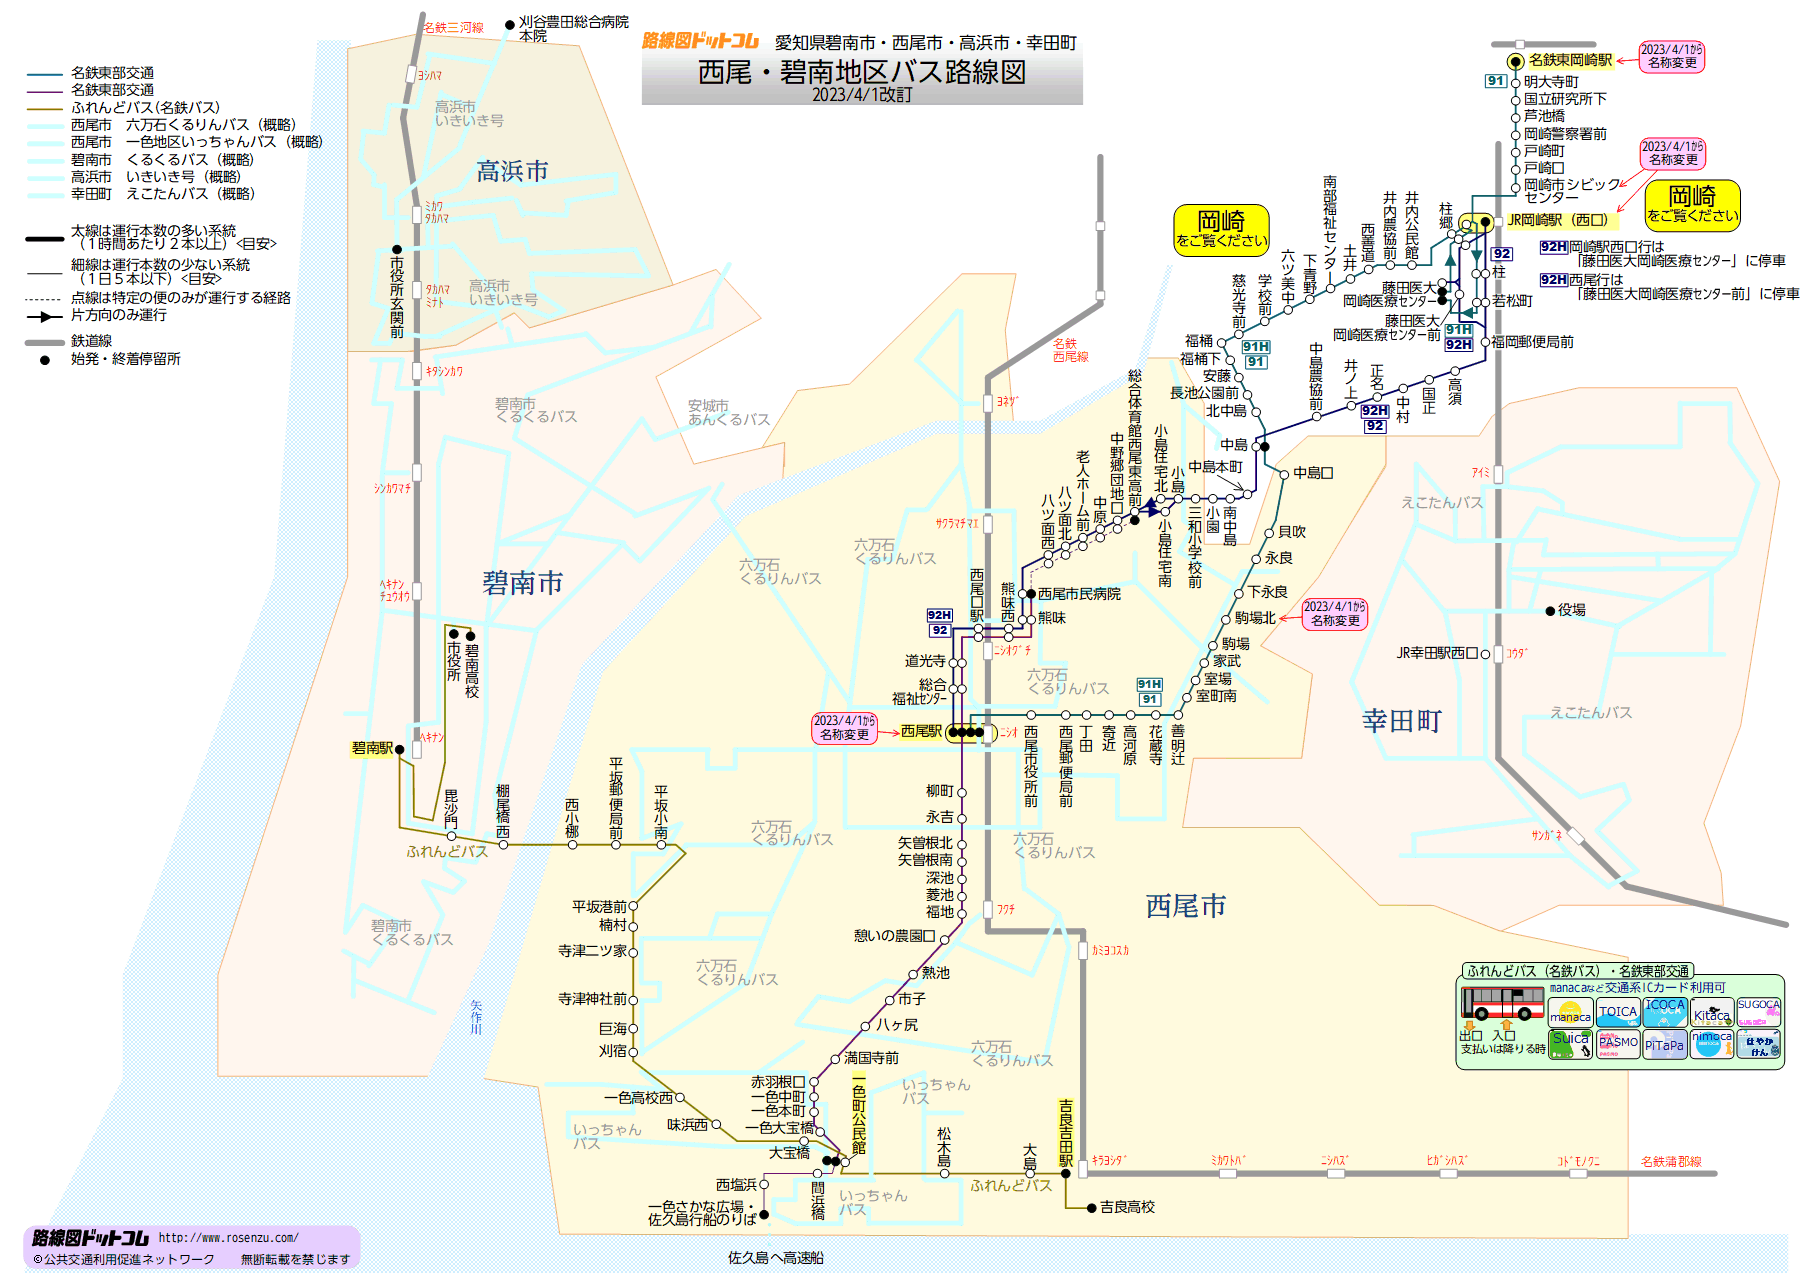 西尾・碧南地区バス路線図